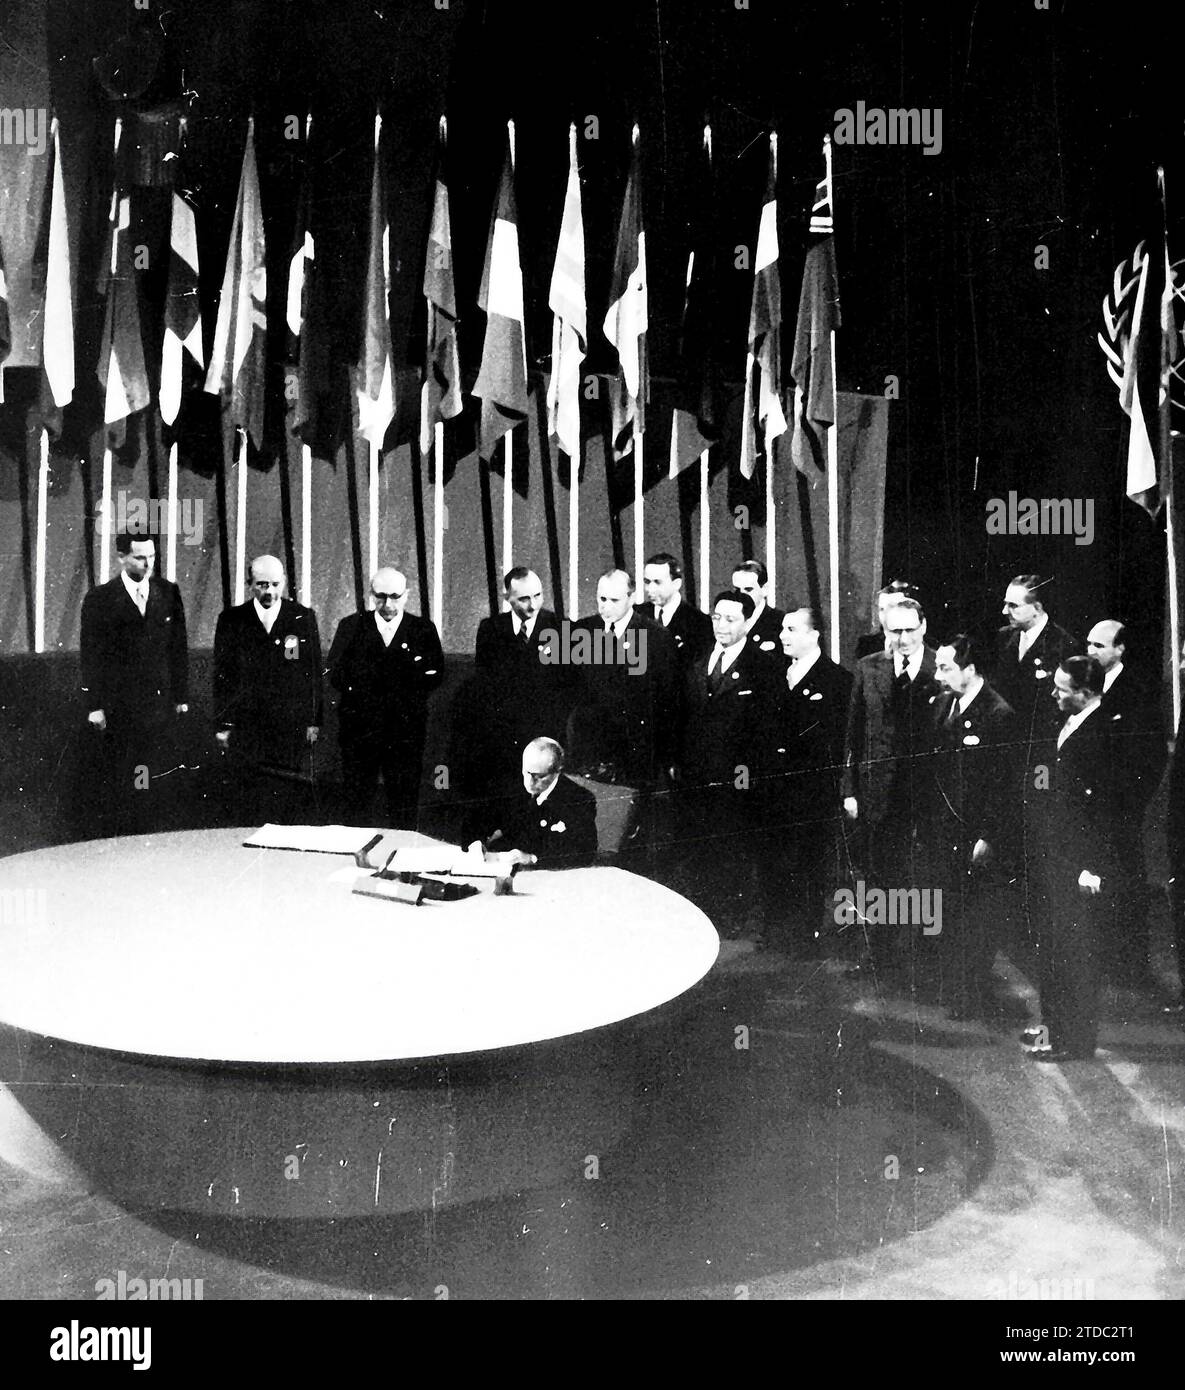 San Francisco (Stati Uniti), 06/26/1945. Firma della carta delle Nazioni Unite. Crediti: Album / Archivo ABC Foto Stock